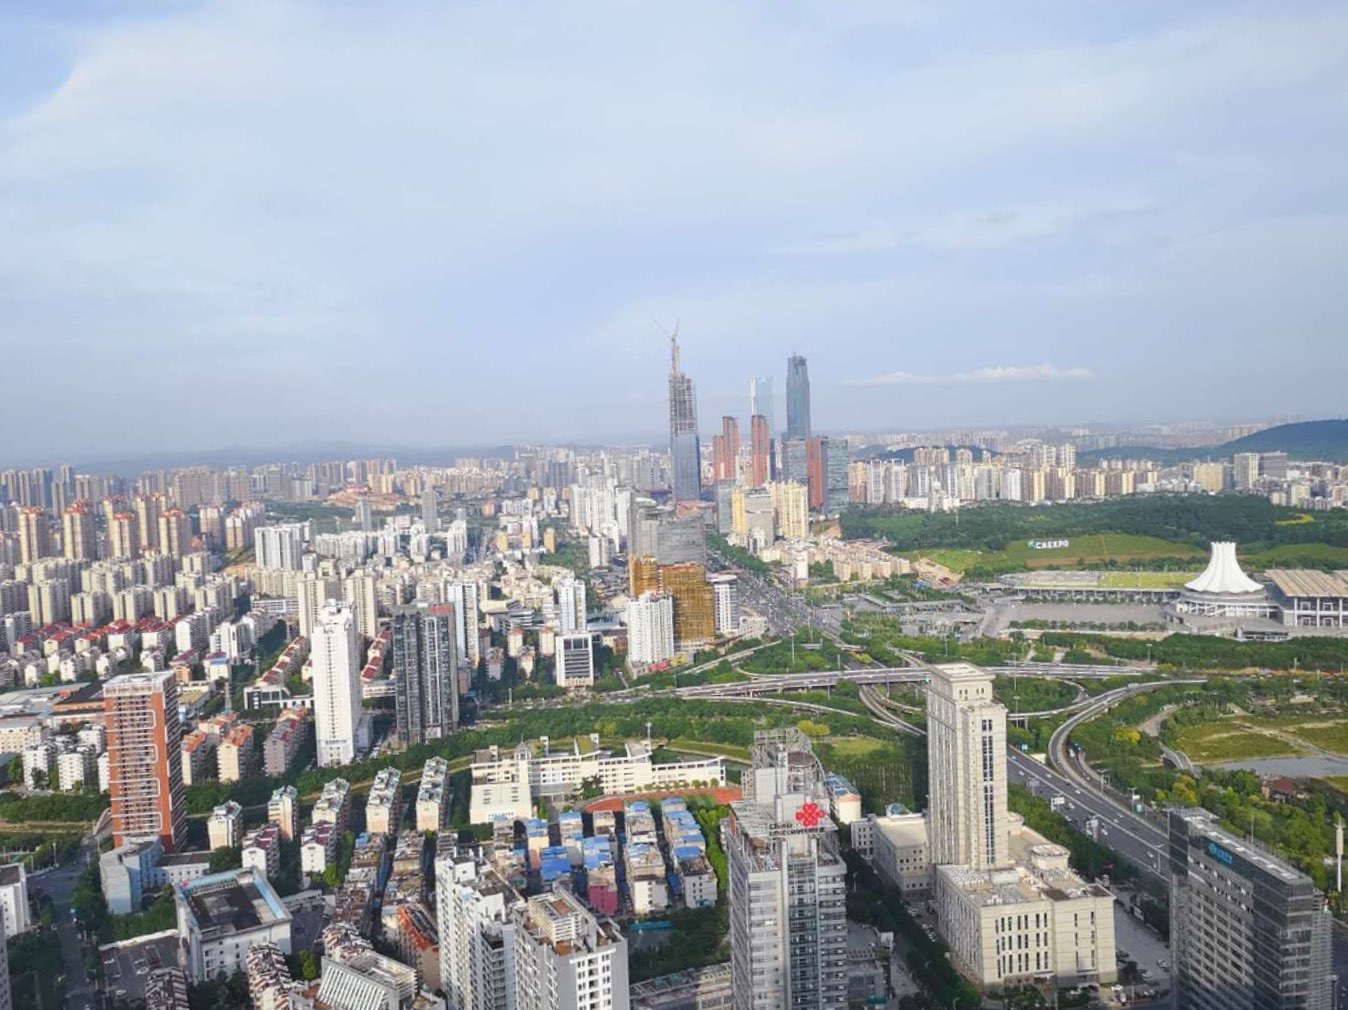 卖点是中国西南最高楼，可360度俯瞰南宁市区。但绝大部分是隔着玻璃观望